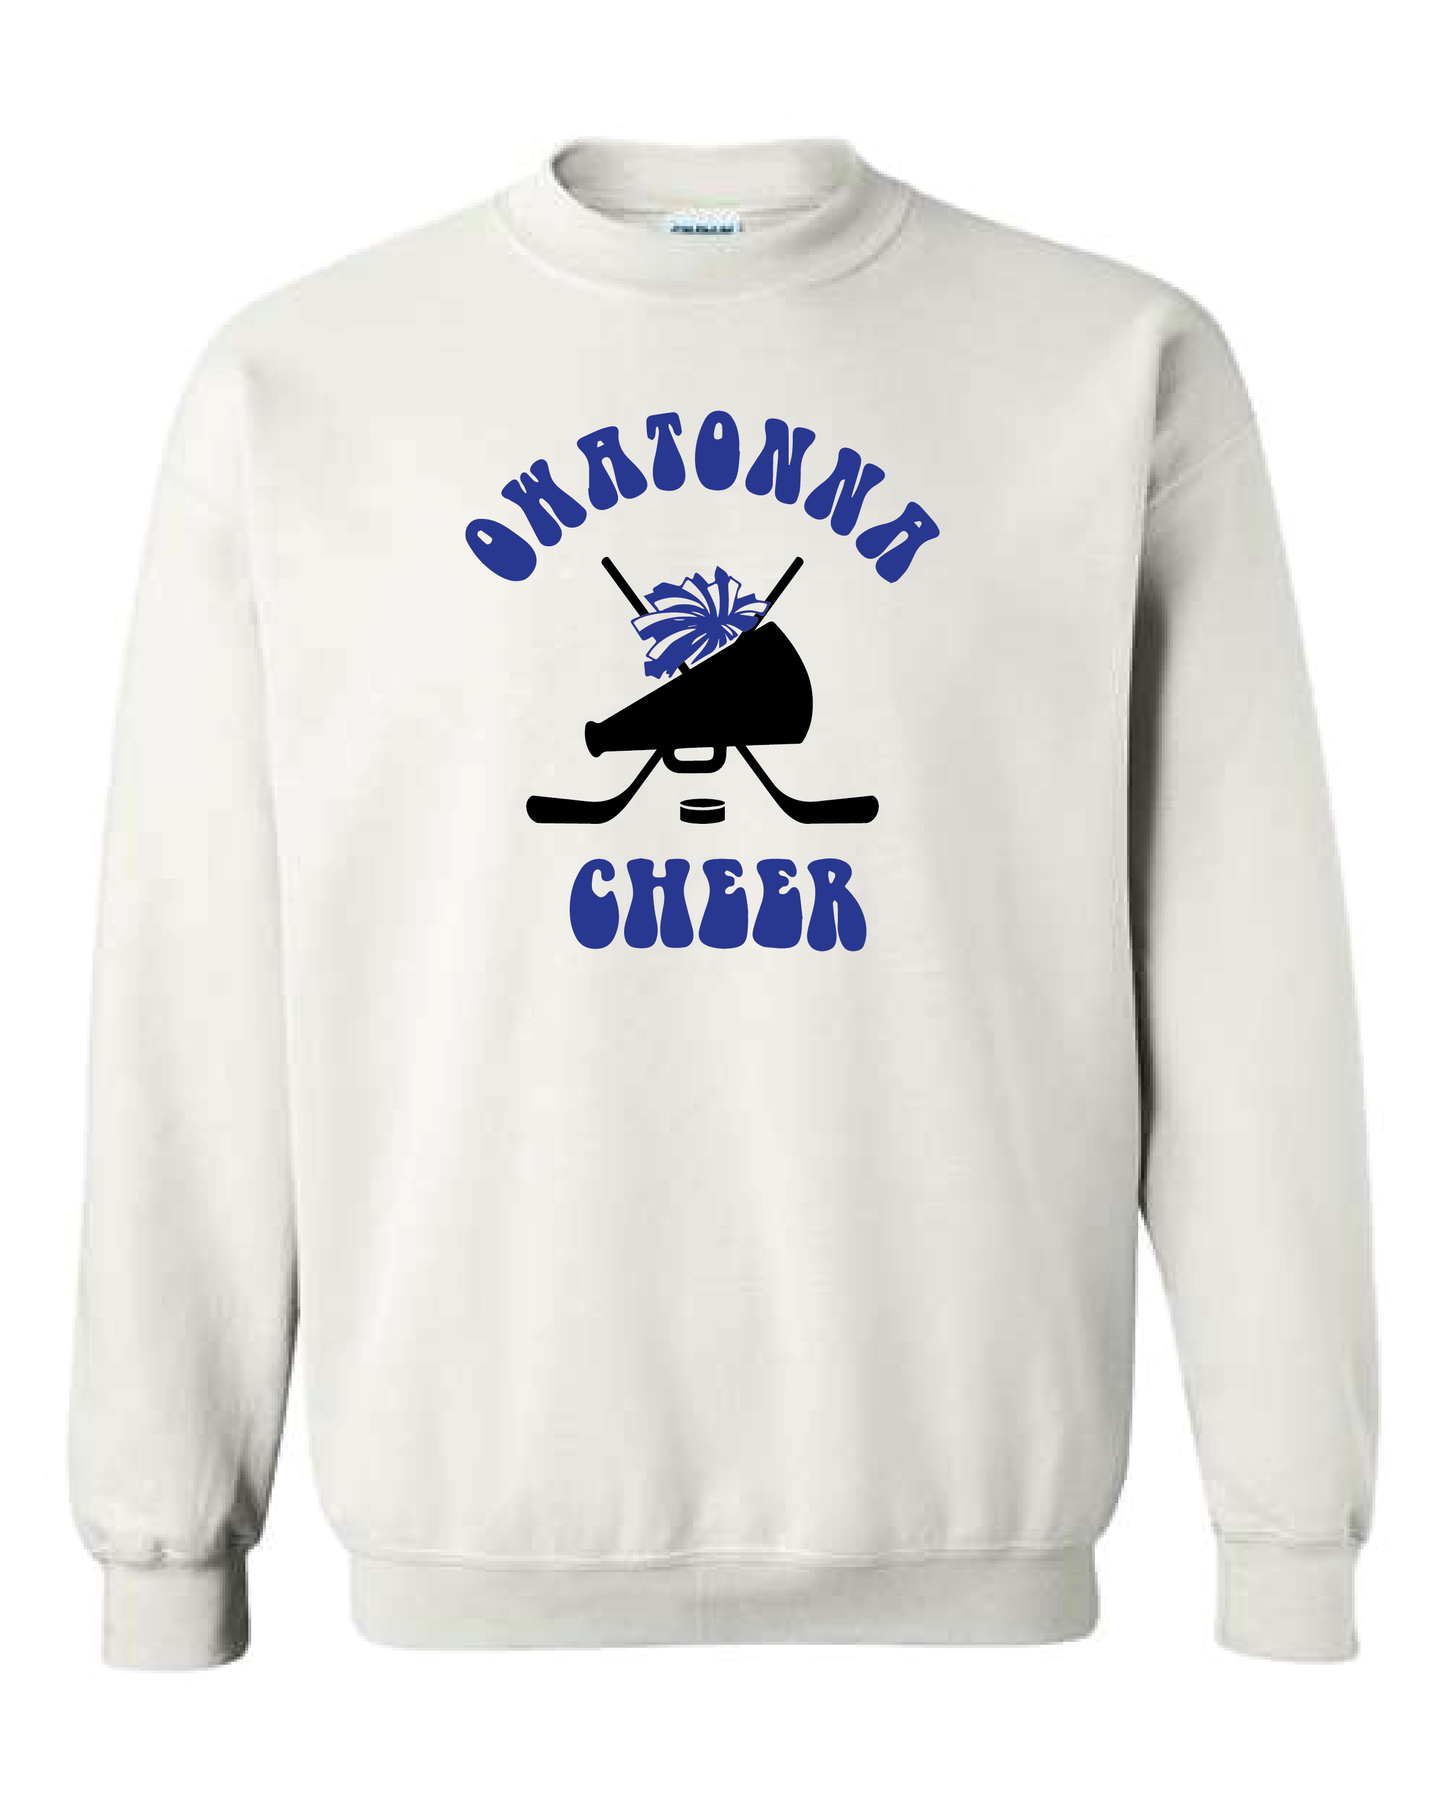 OHS Cheer Hockey Sweatshirt - Multiple Colors